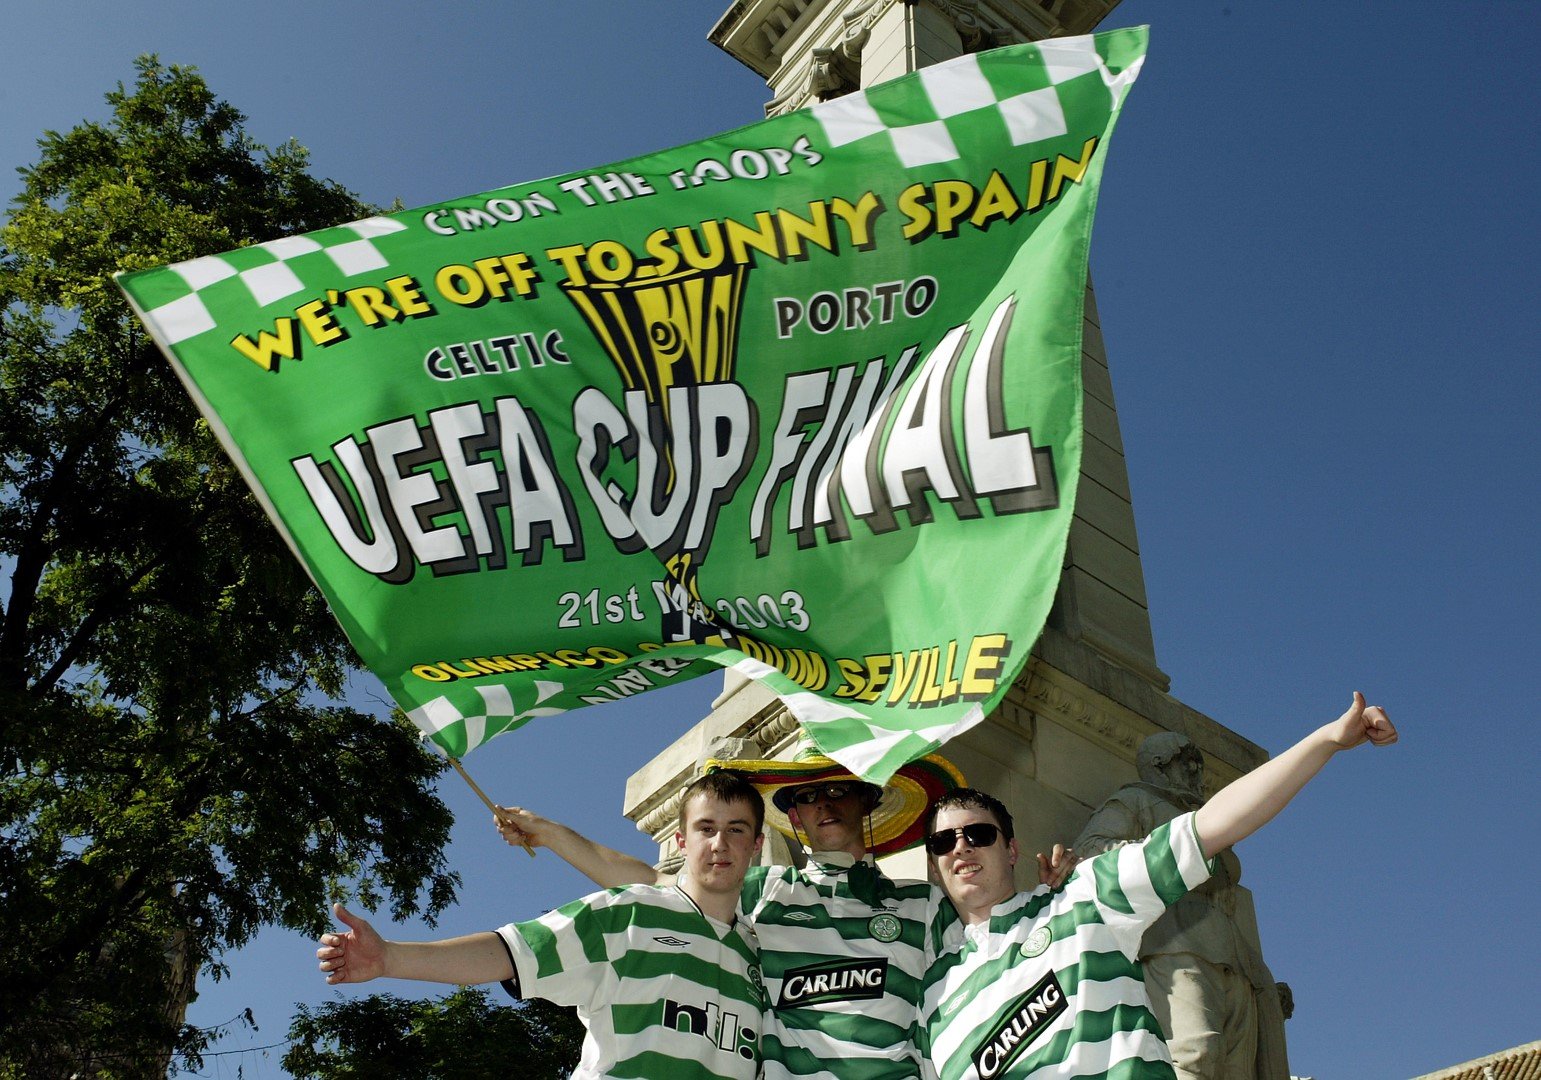 2003 г., Севиля. Морето от фенове на Селтик заля града за финала в Купата на УЕФА срещу Порто. Испанците знаят какво ги очаква и сега, но с агитката на другия гранд от Глазгоу.